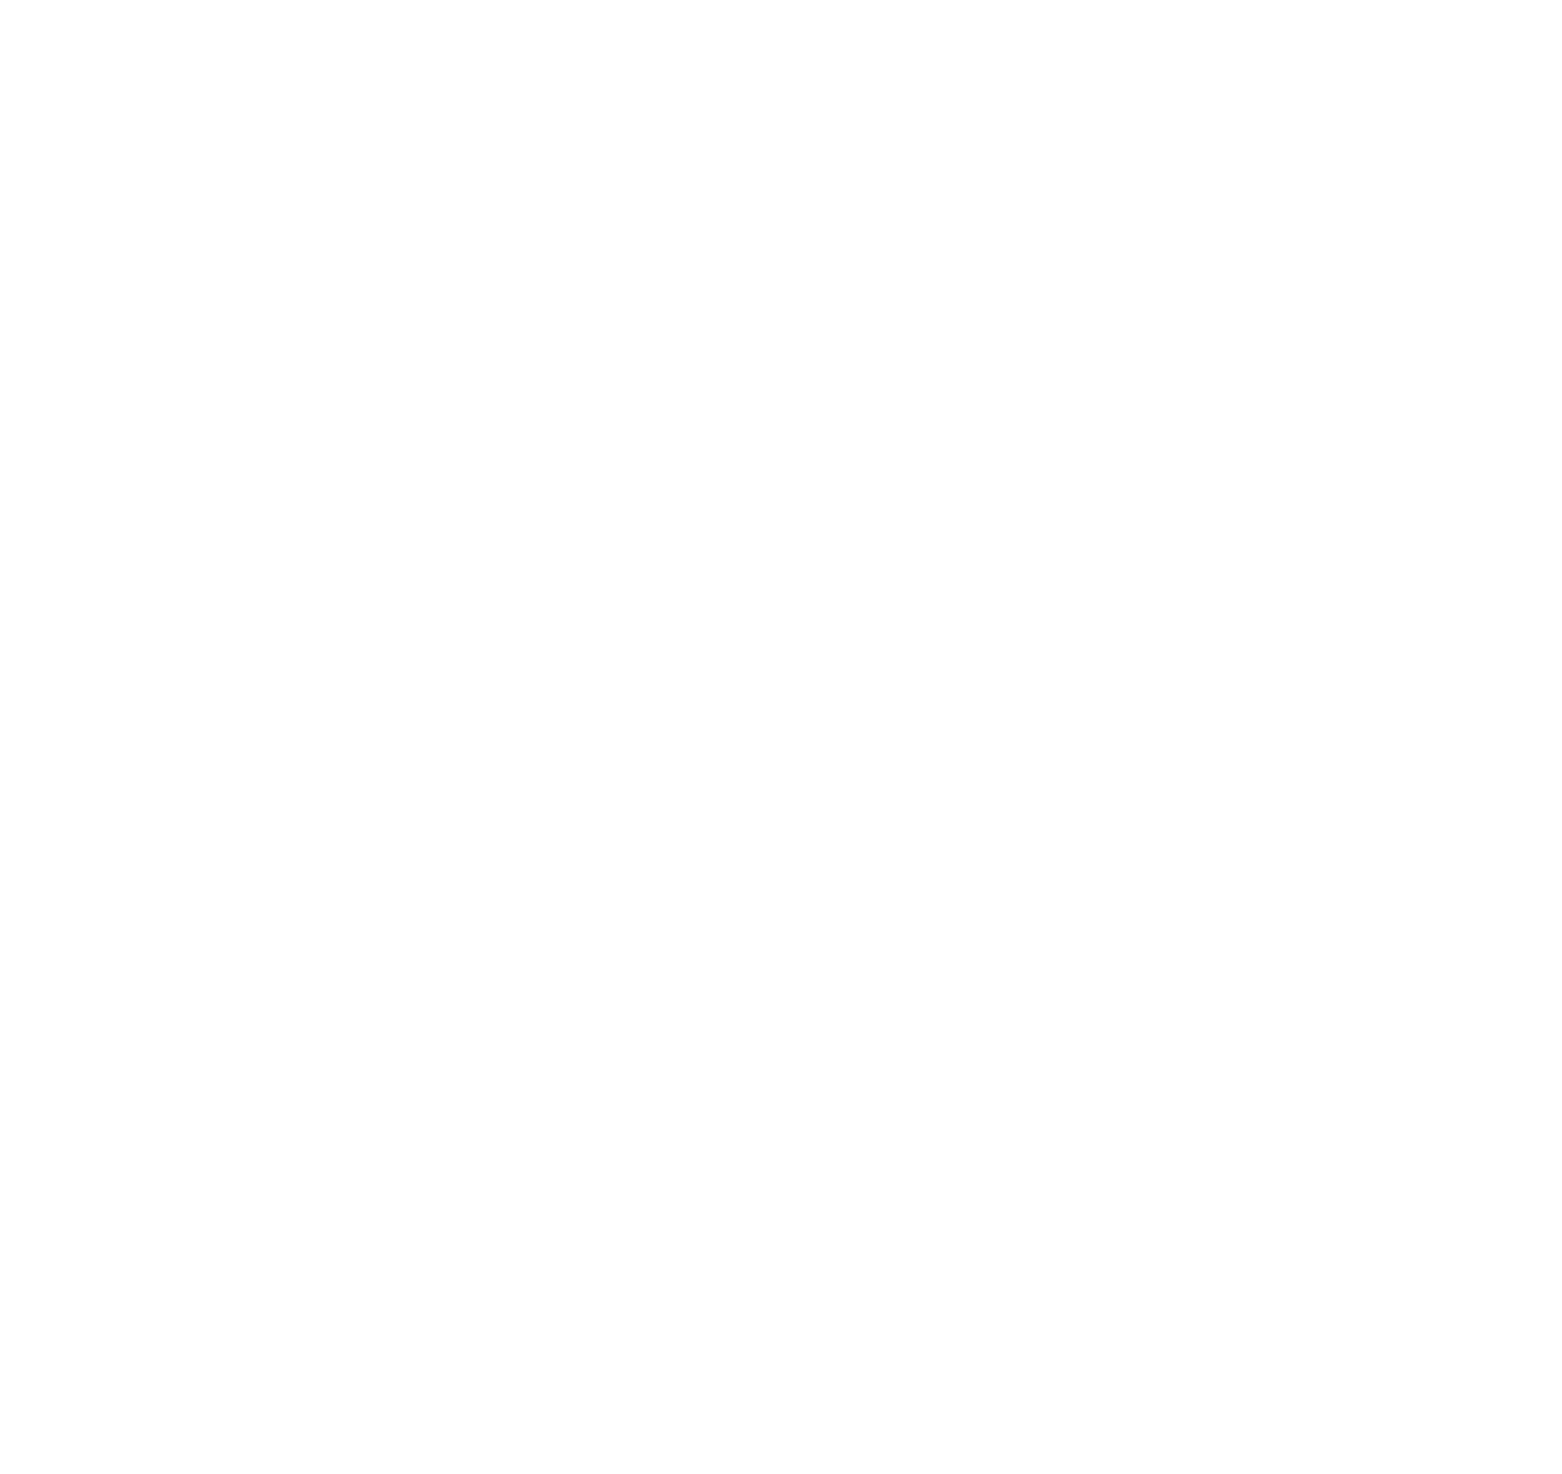 Afristrat Investment logo for dark backgrounds (transparent PNG)